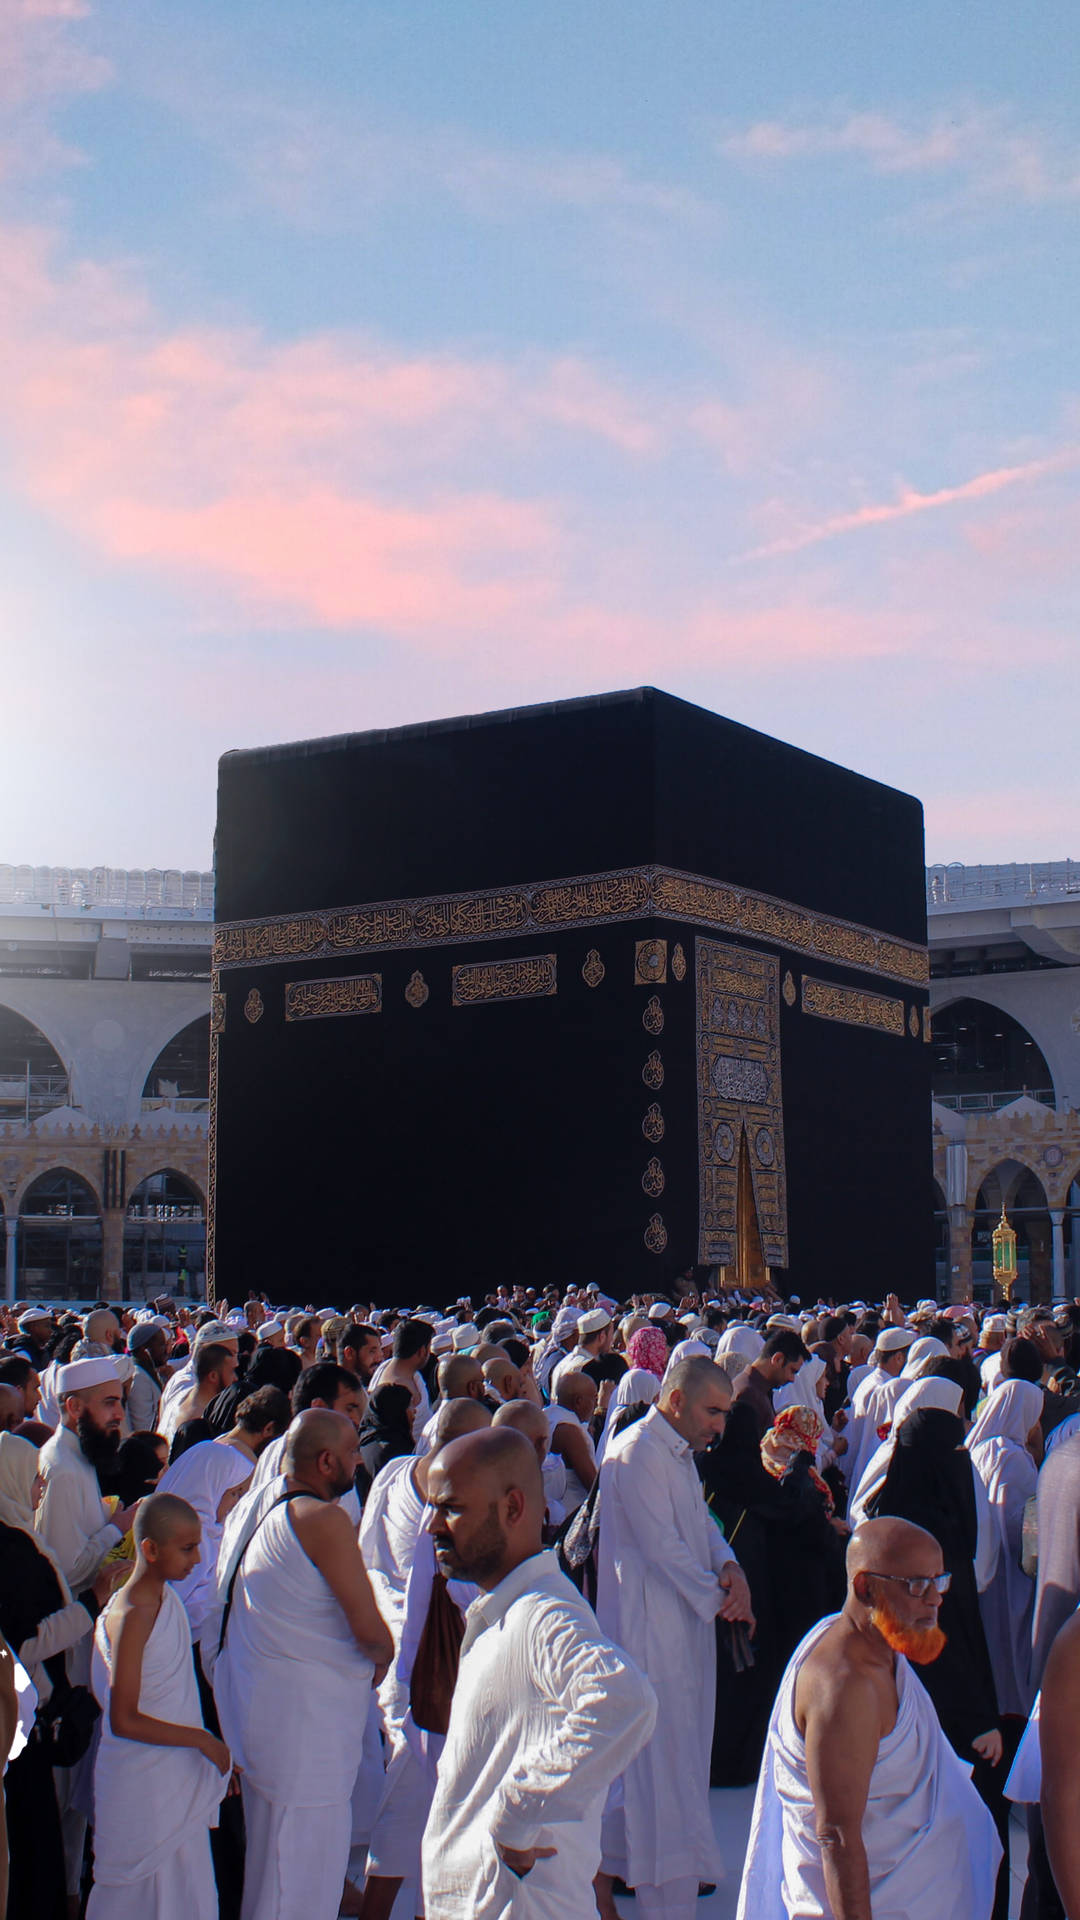 Muçulmanosse Reúnem Em Torno Da Kaaba. Papel de Parede